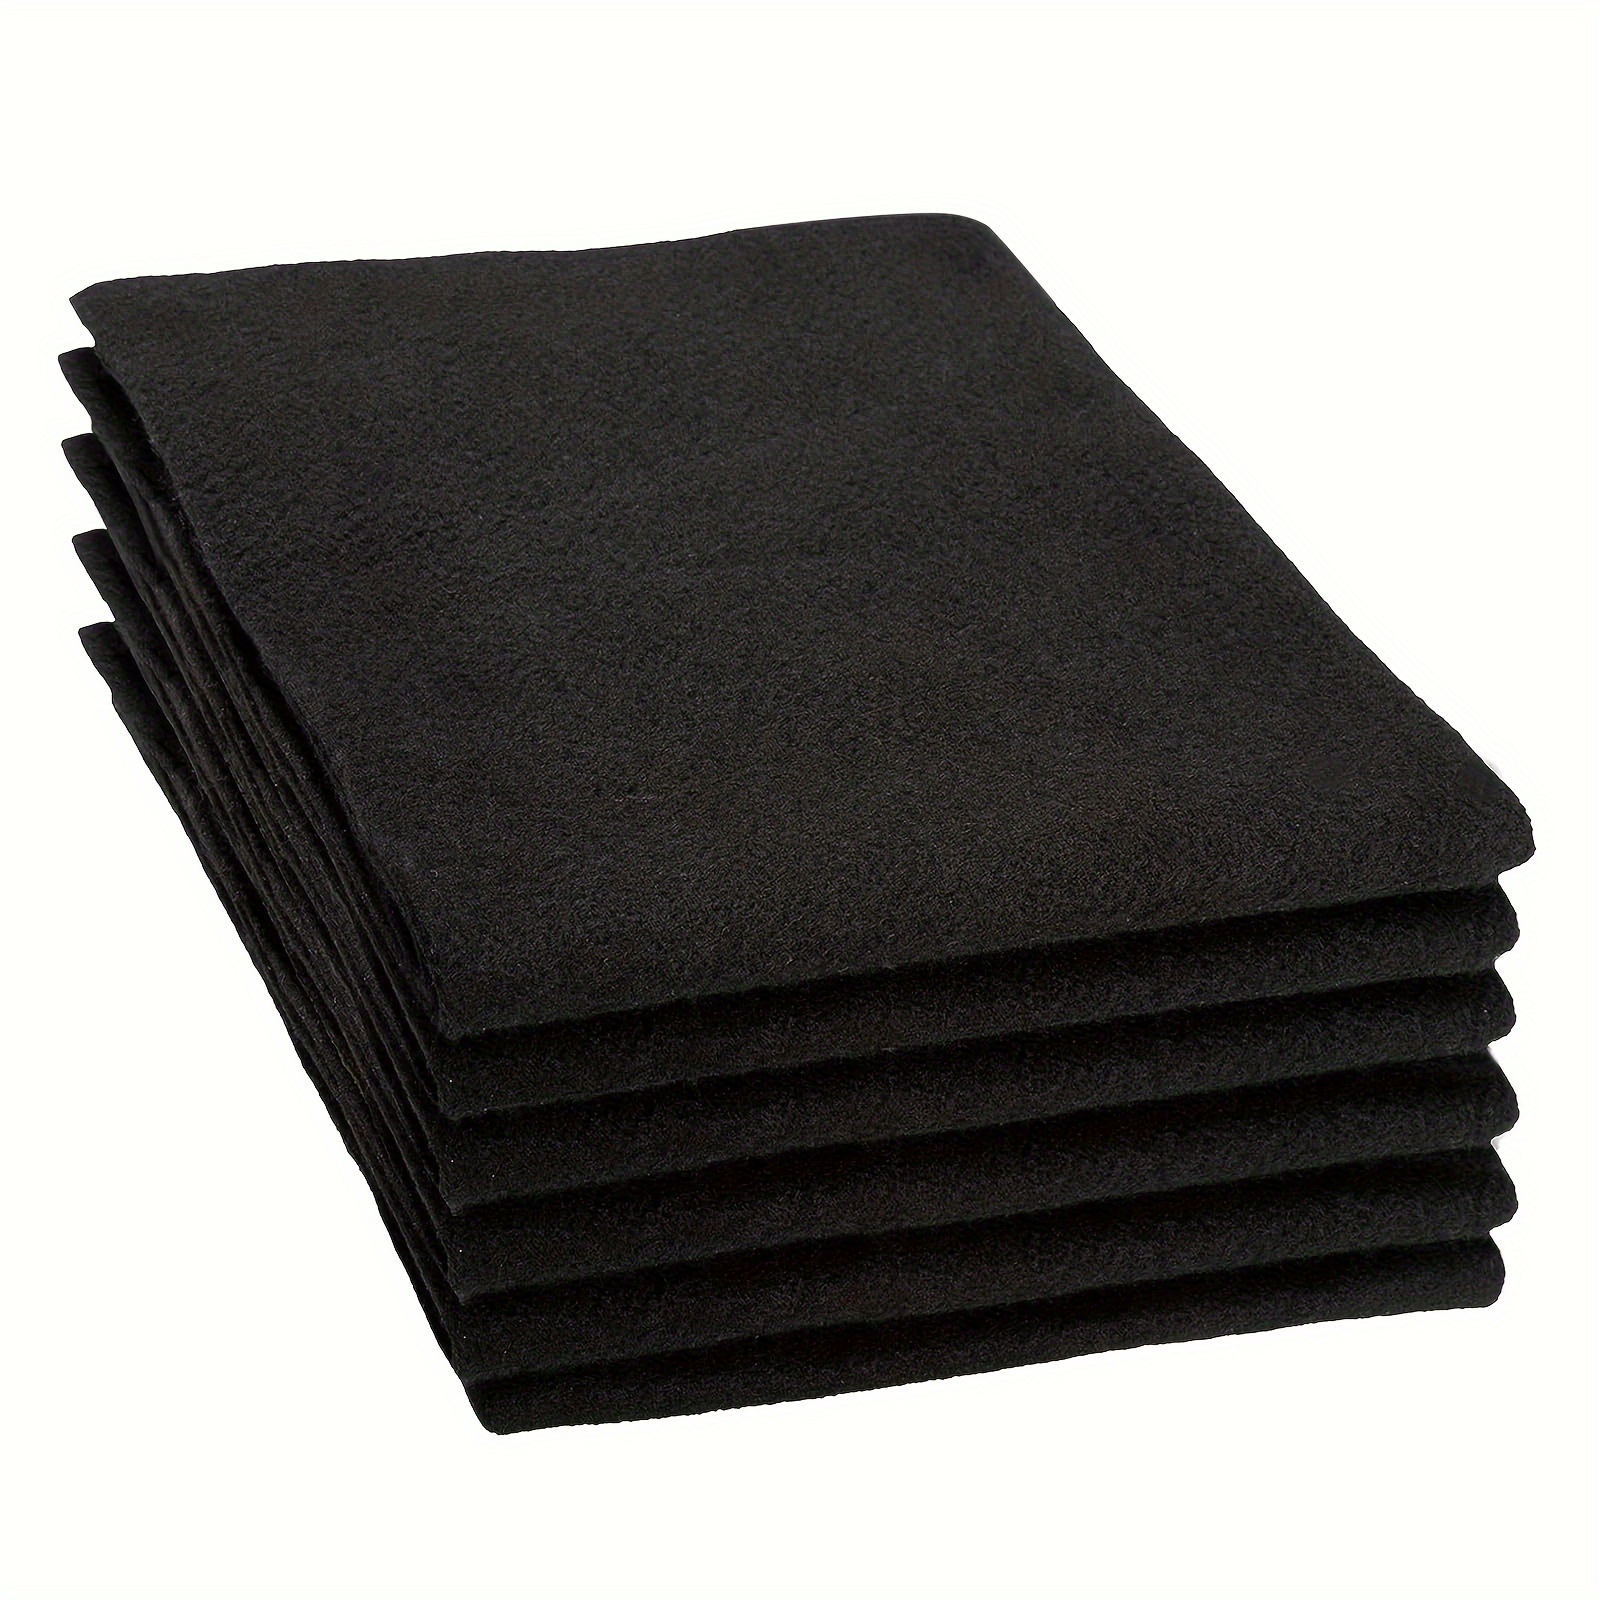 16 Pcs Welding Blankets Carbon Felt Wick 16 x 16, 3 Mm/ 1/7 High